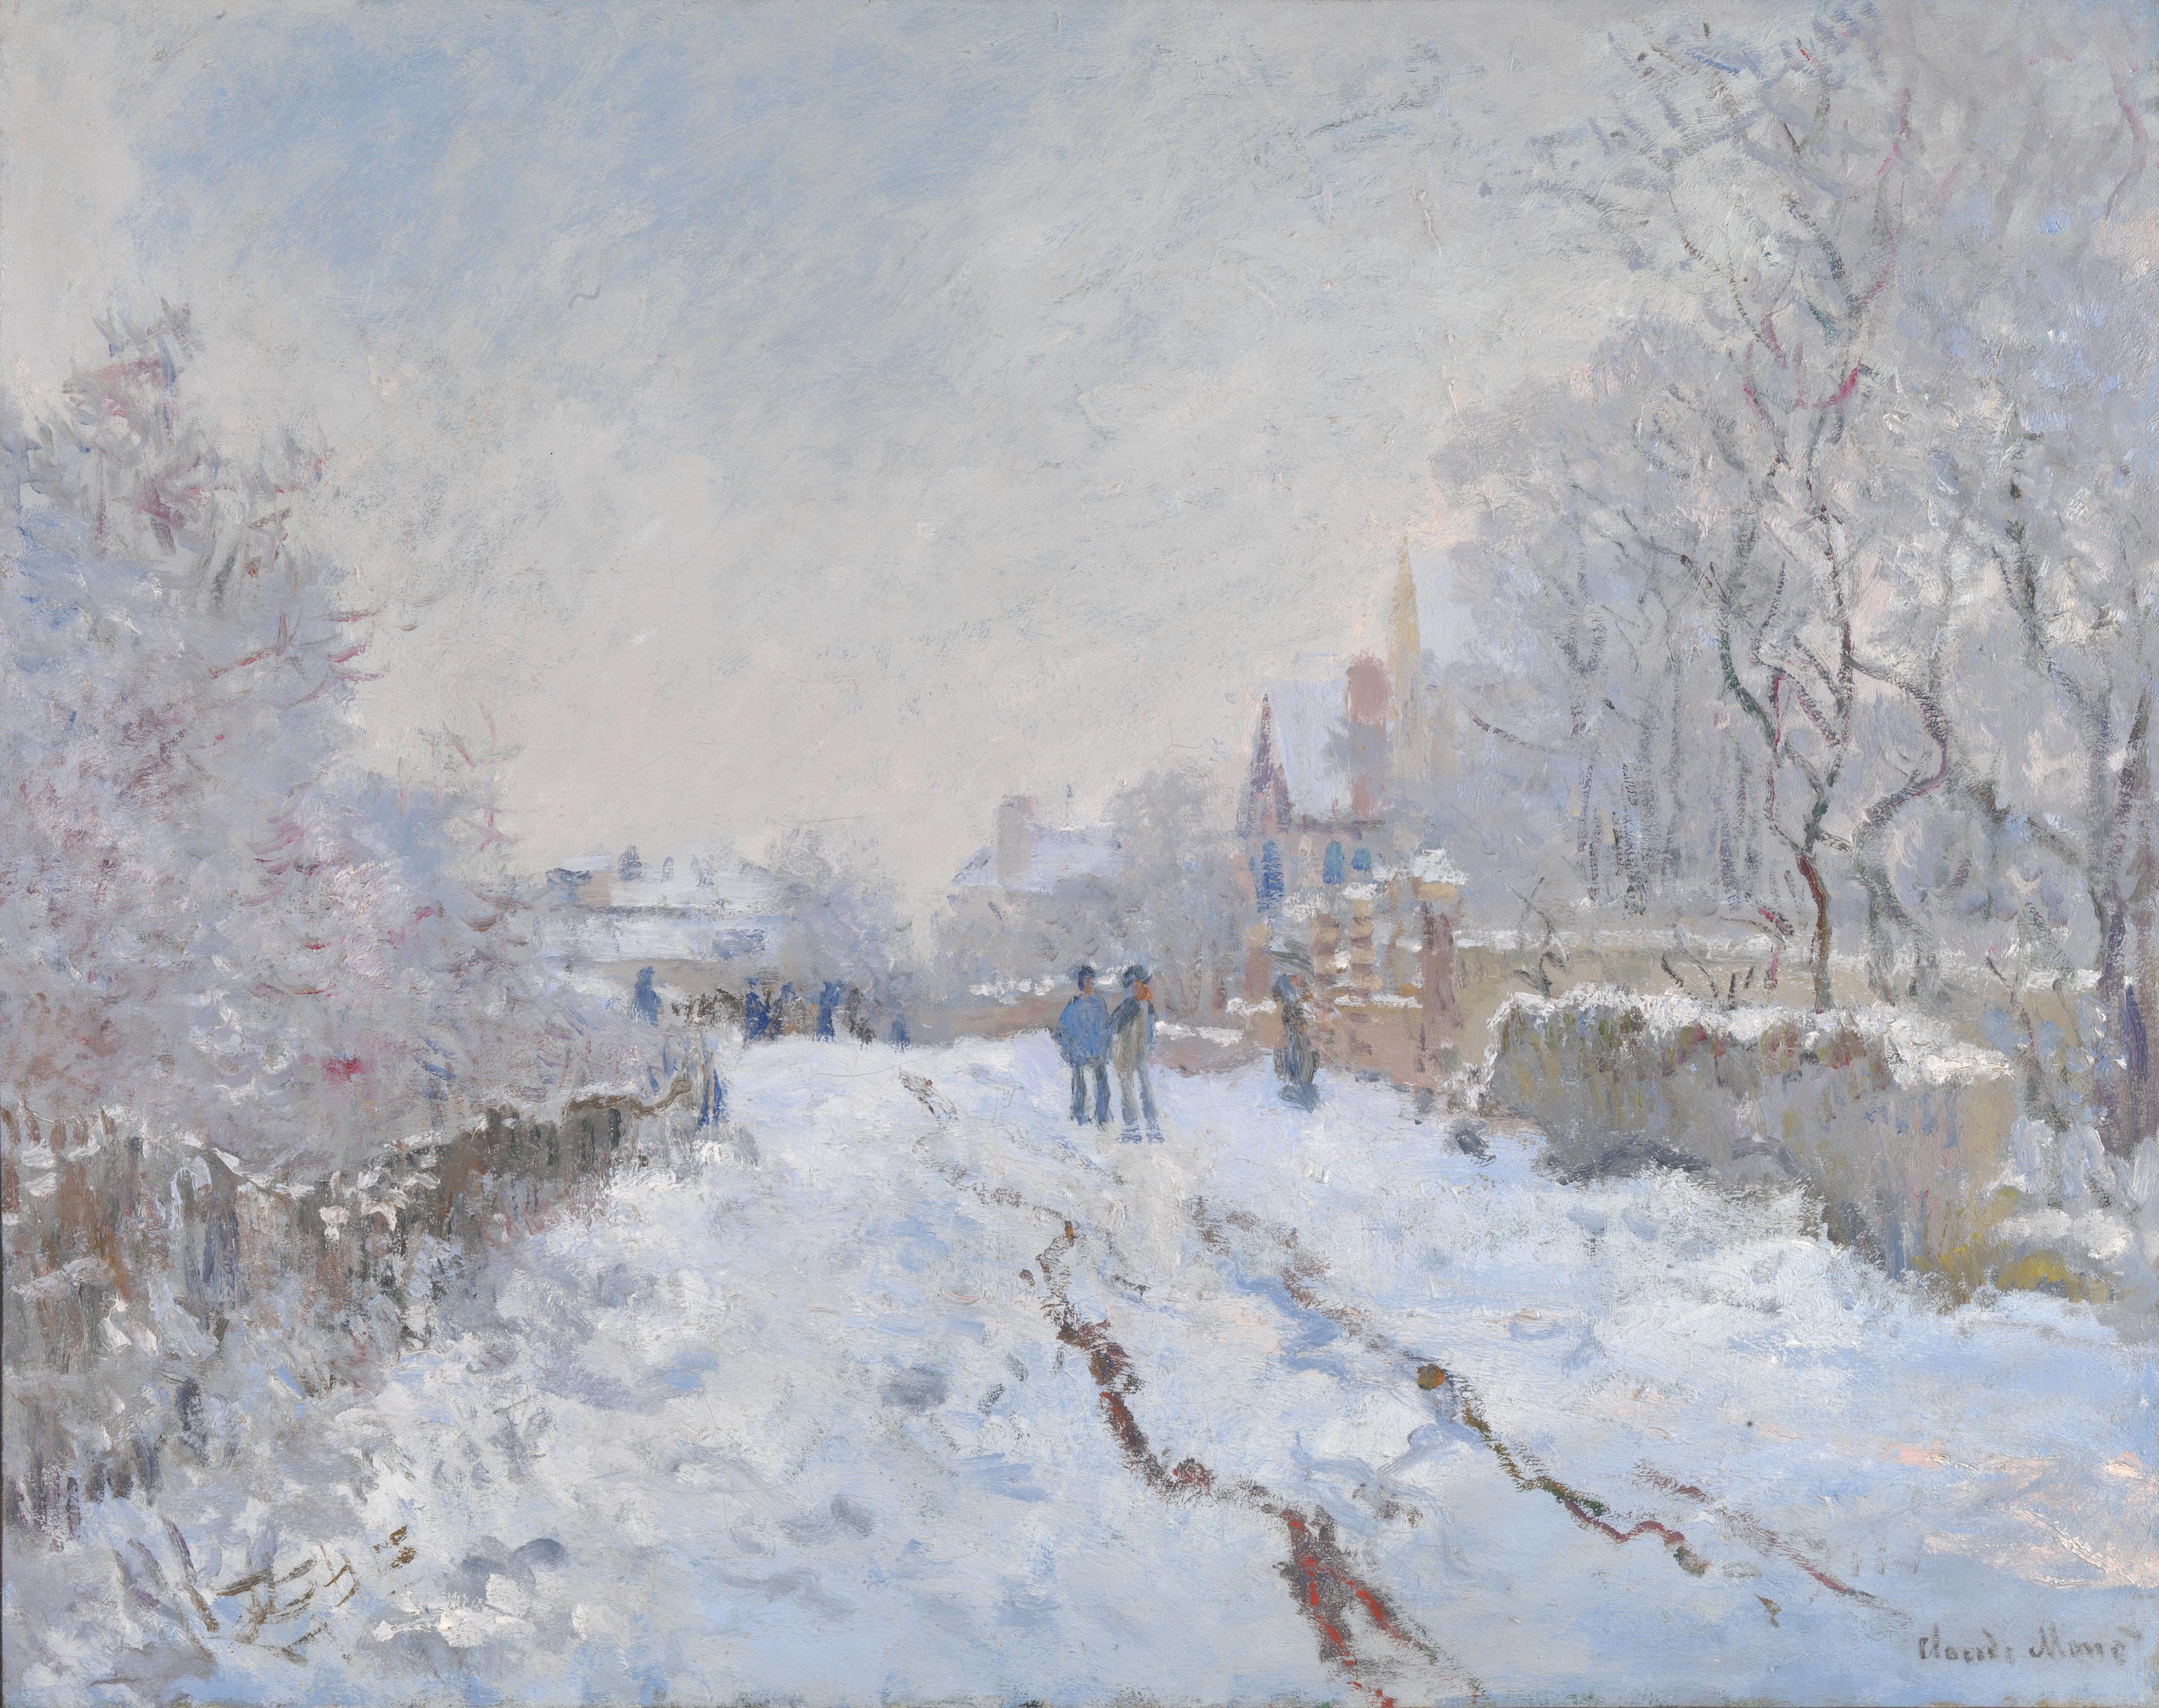 アルジャントゥイユの雪 by Claude Monet - 1875年 - 71.1 x 91.4 cm 